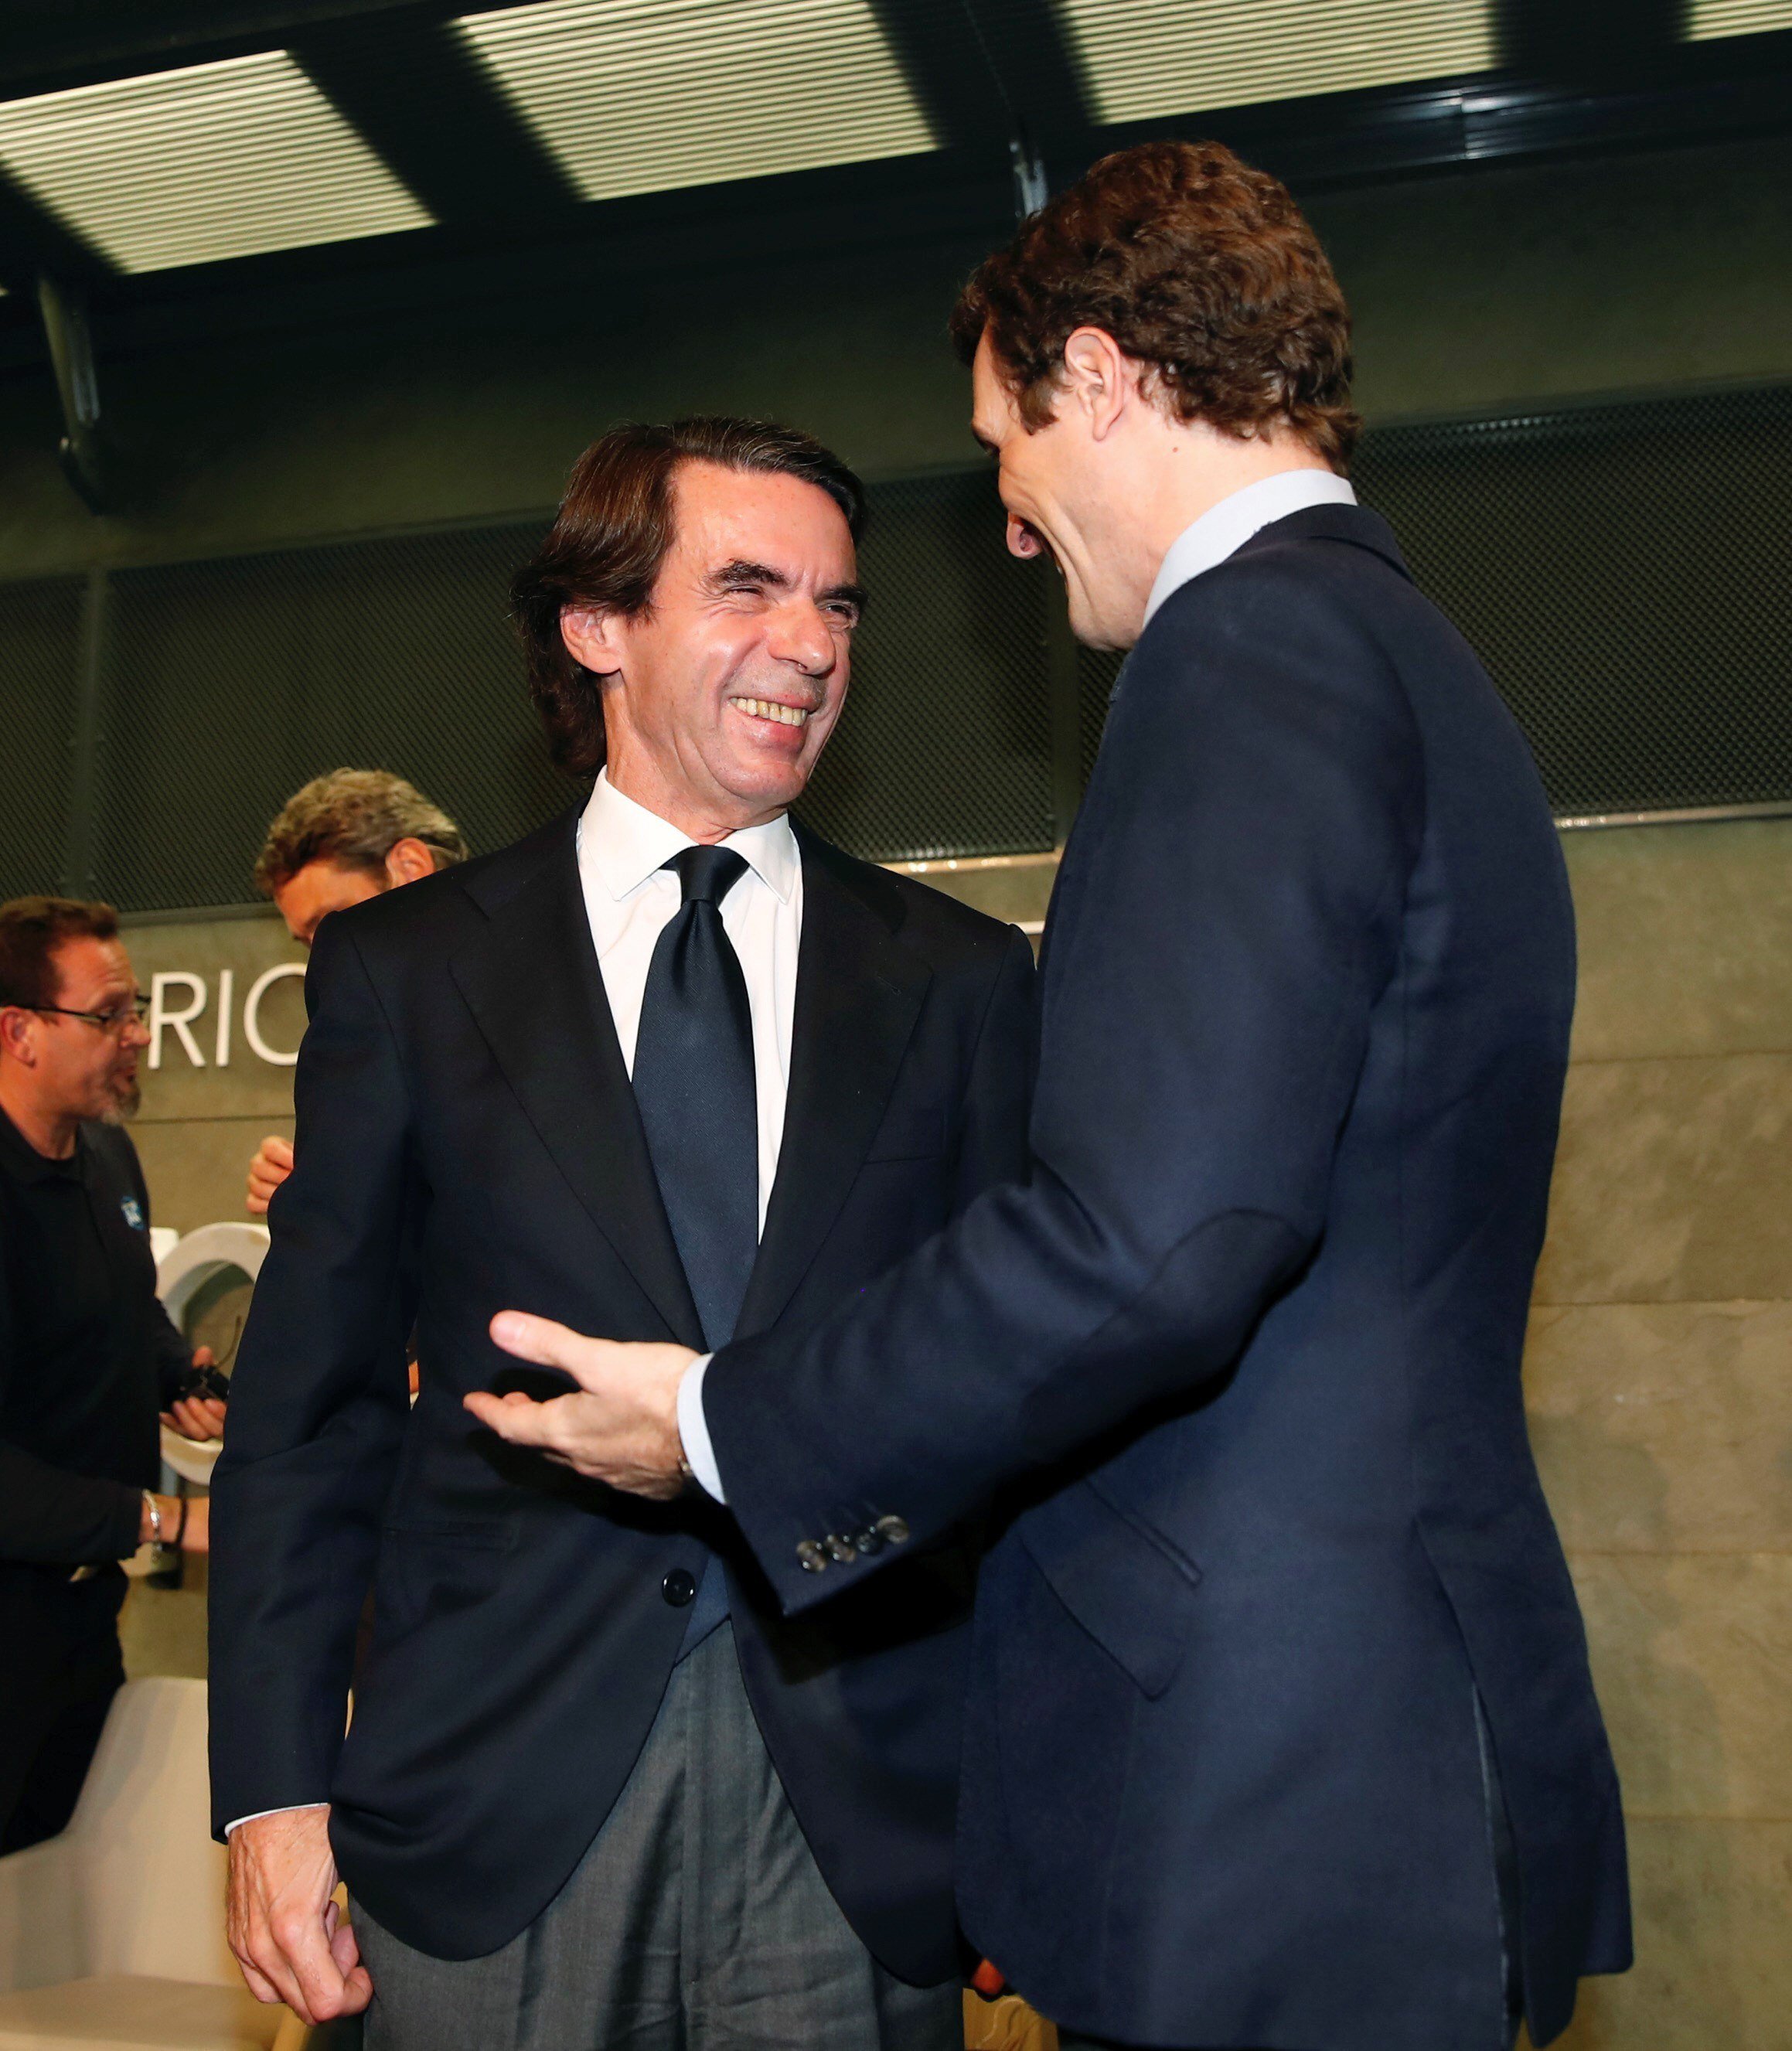 Aznar, arropado por Casado: "El gobierno de España está condicionado por golpistas"